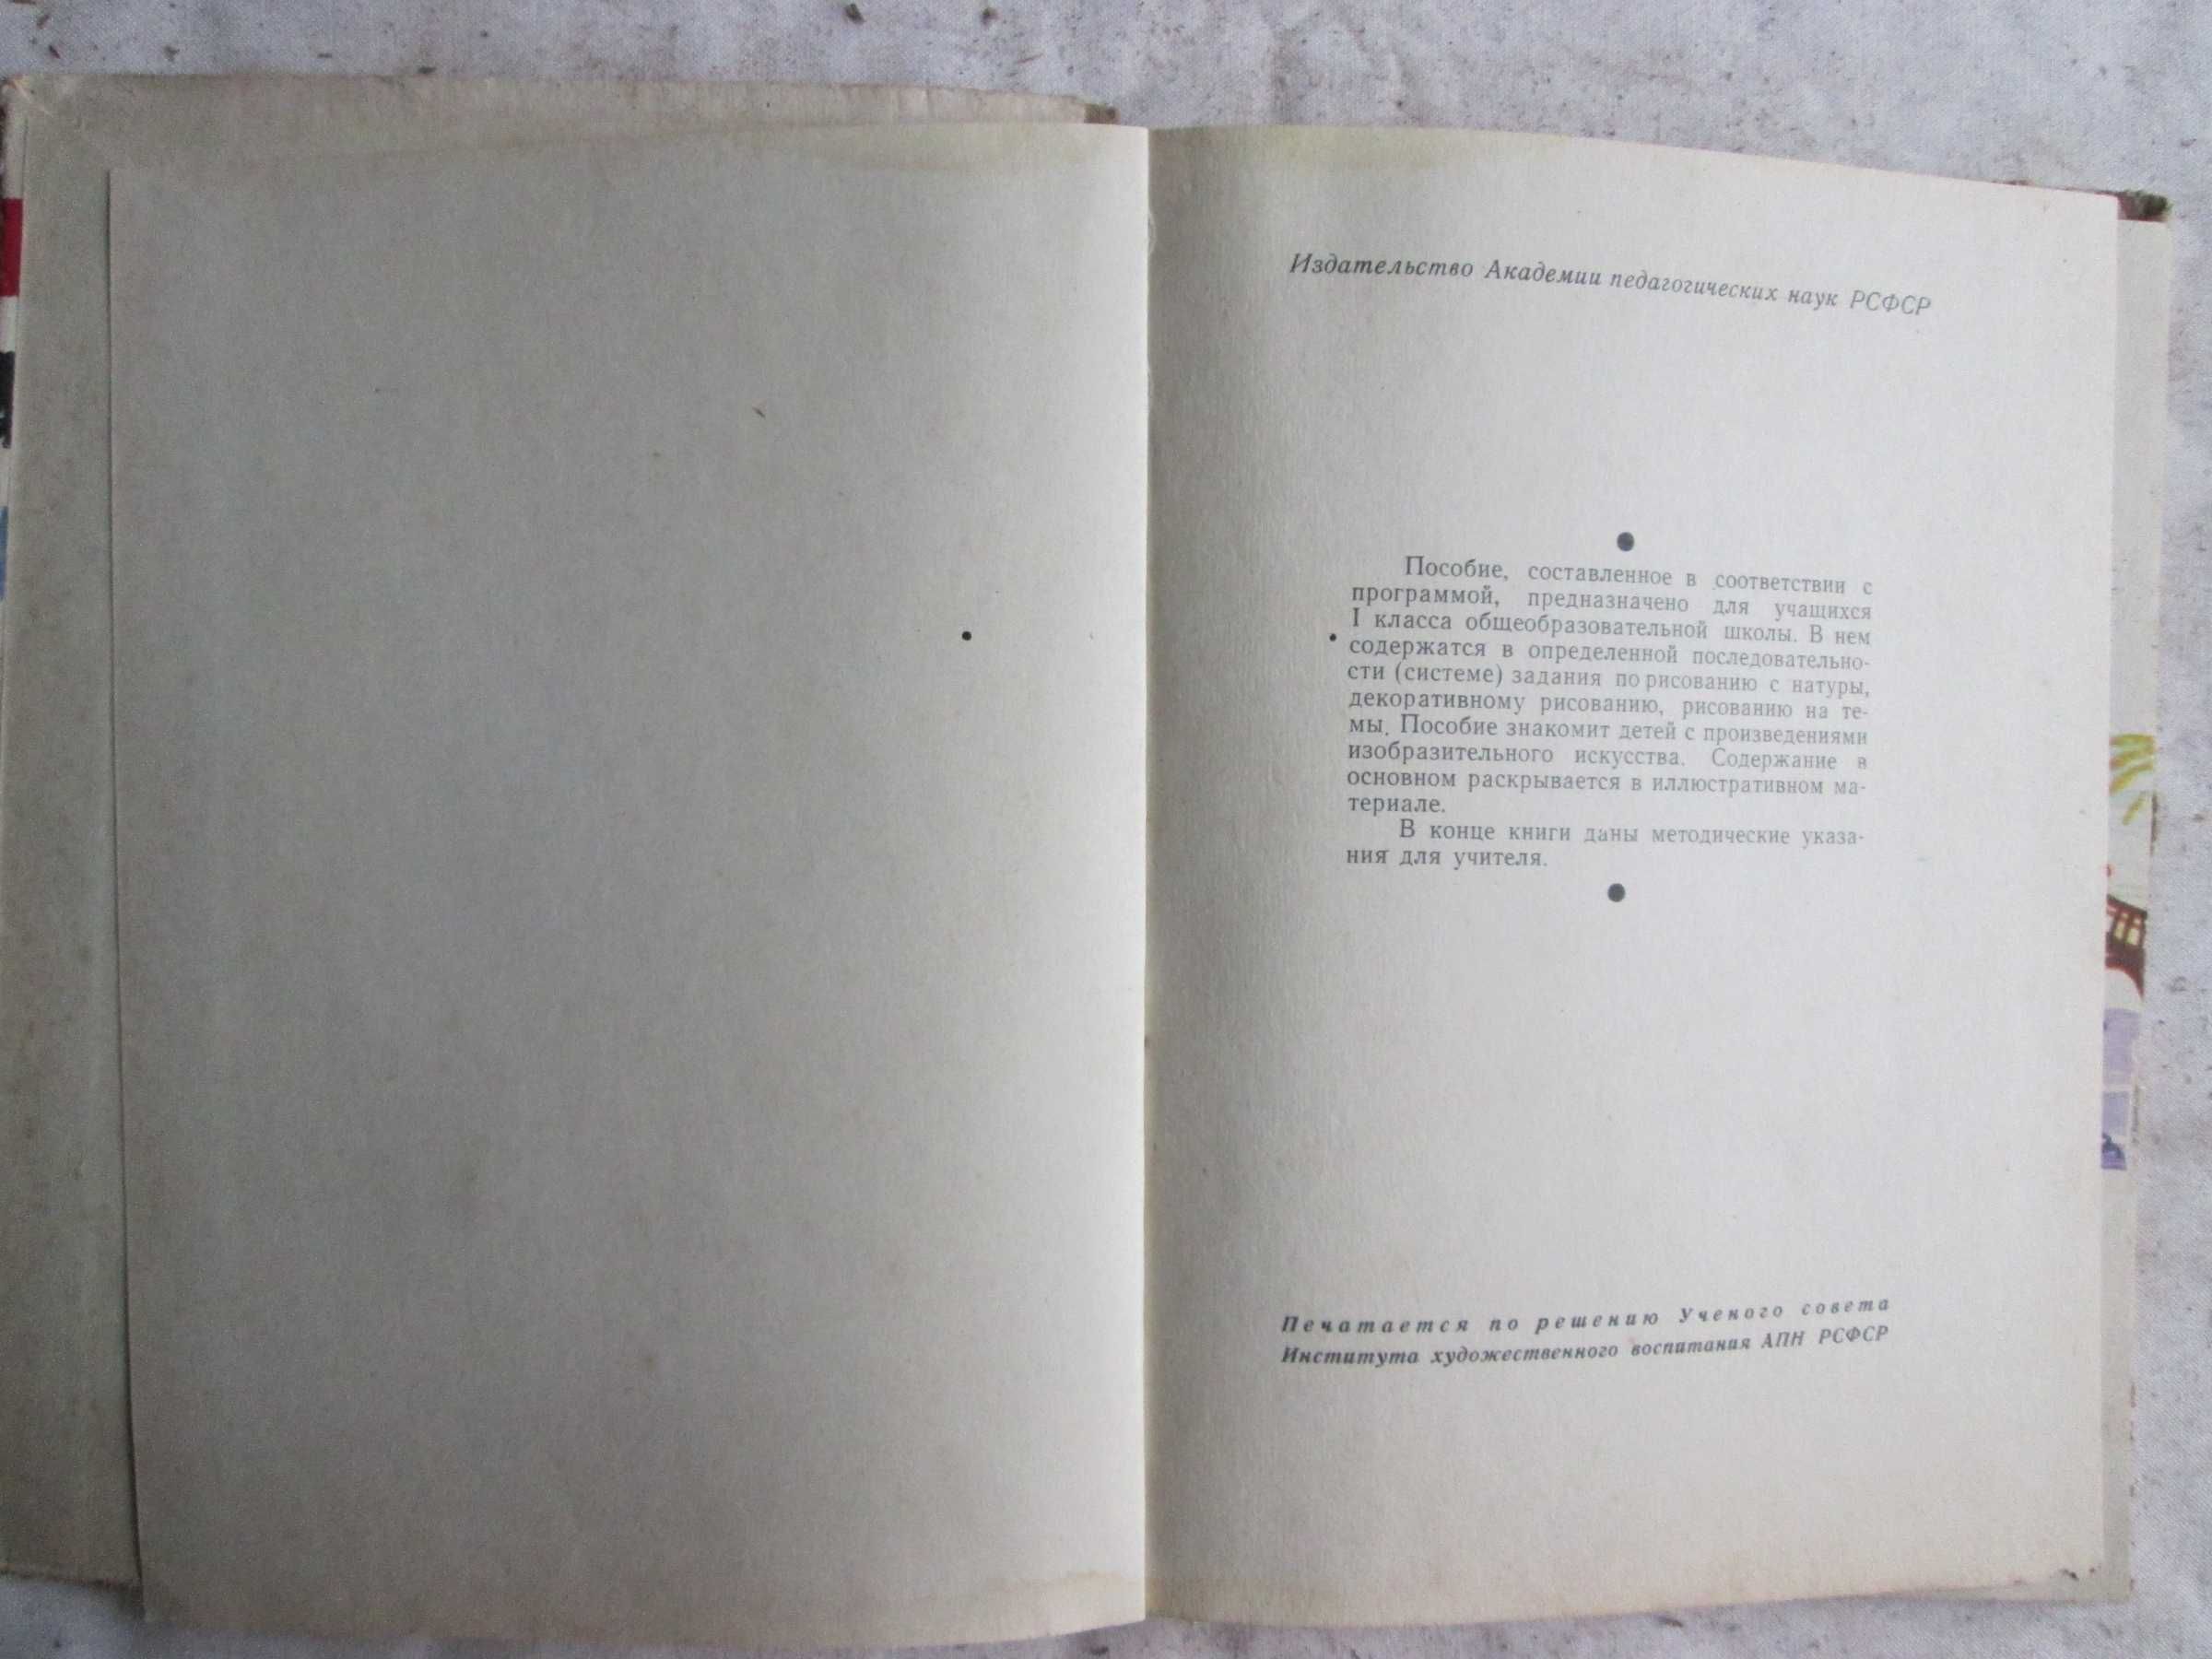 Колокольников В. В. Учебник Рисование 1 класс. 1963 г.